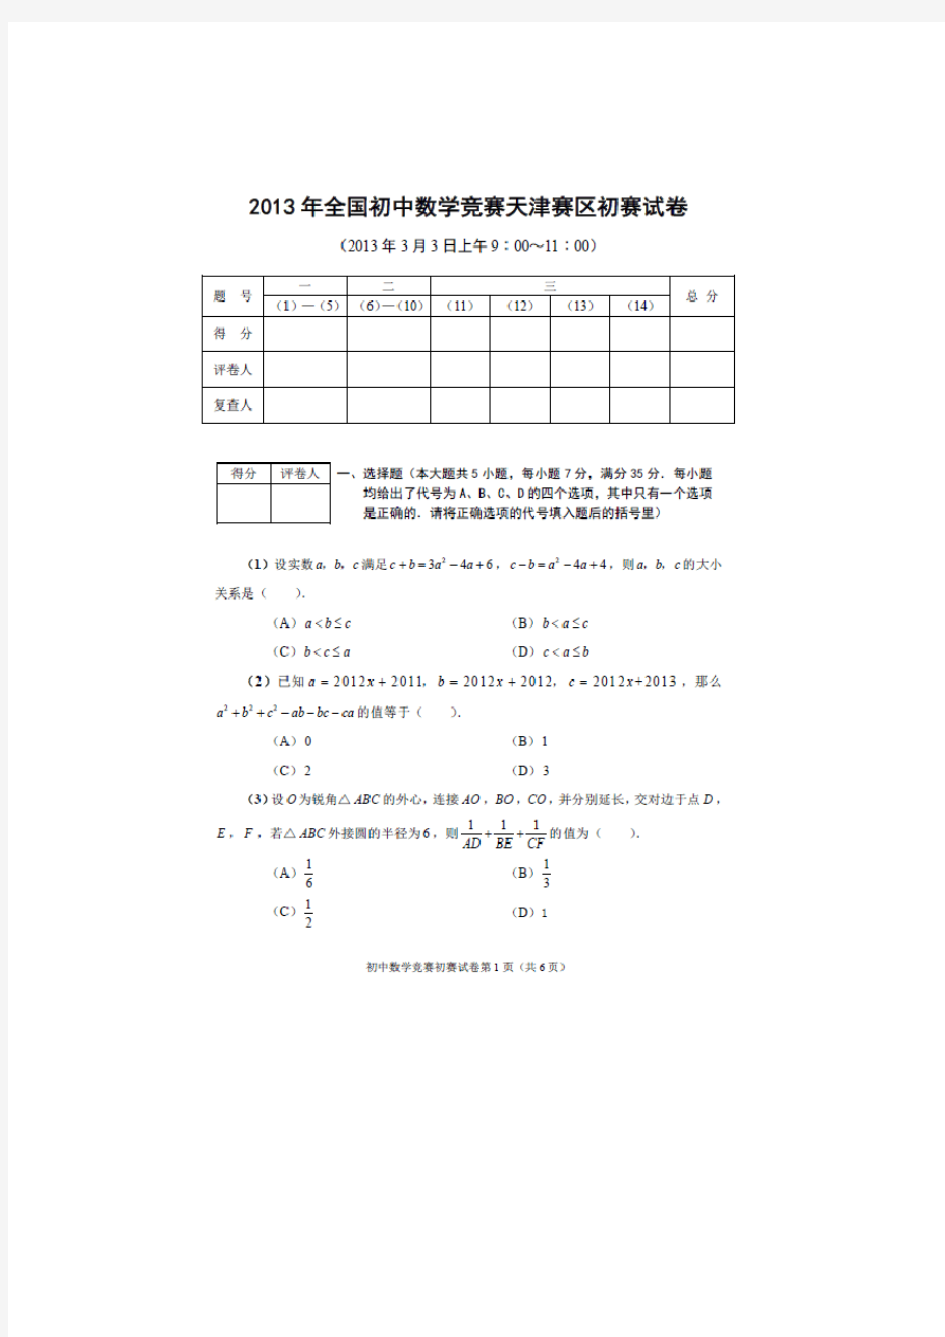 全国初中数学竞赛天津赛区初赛试卷及答案详解